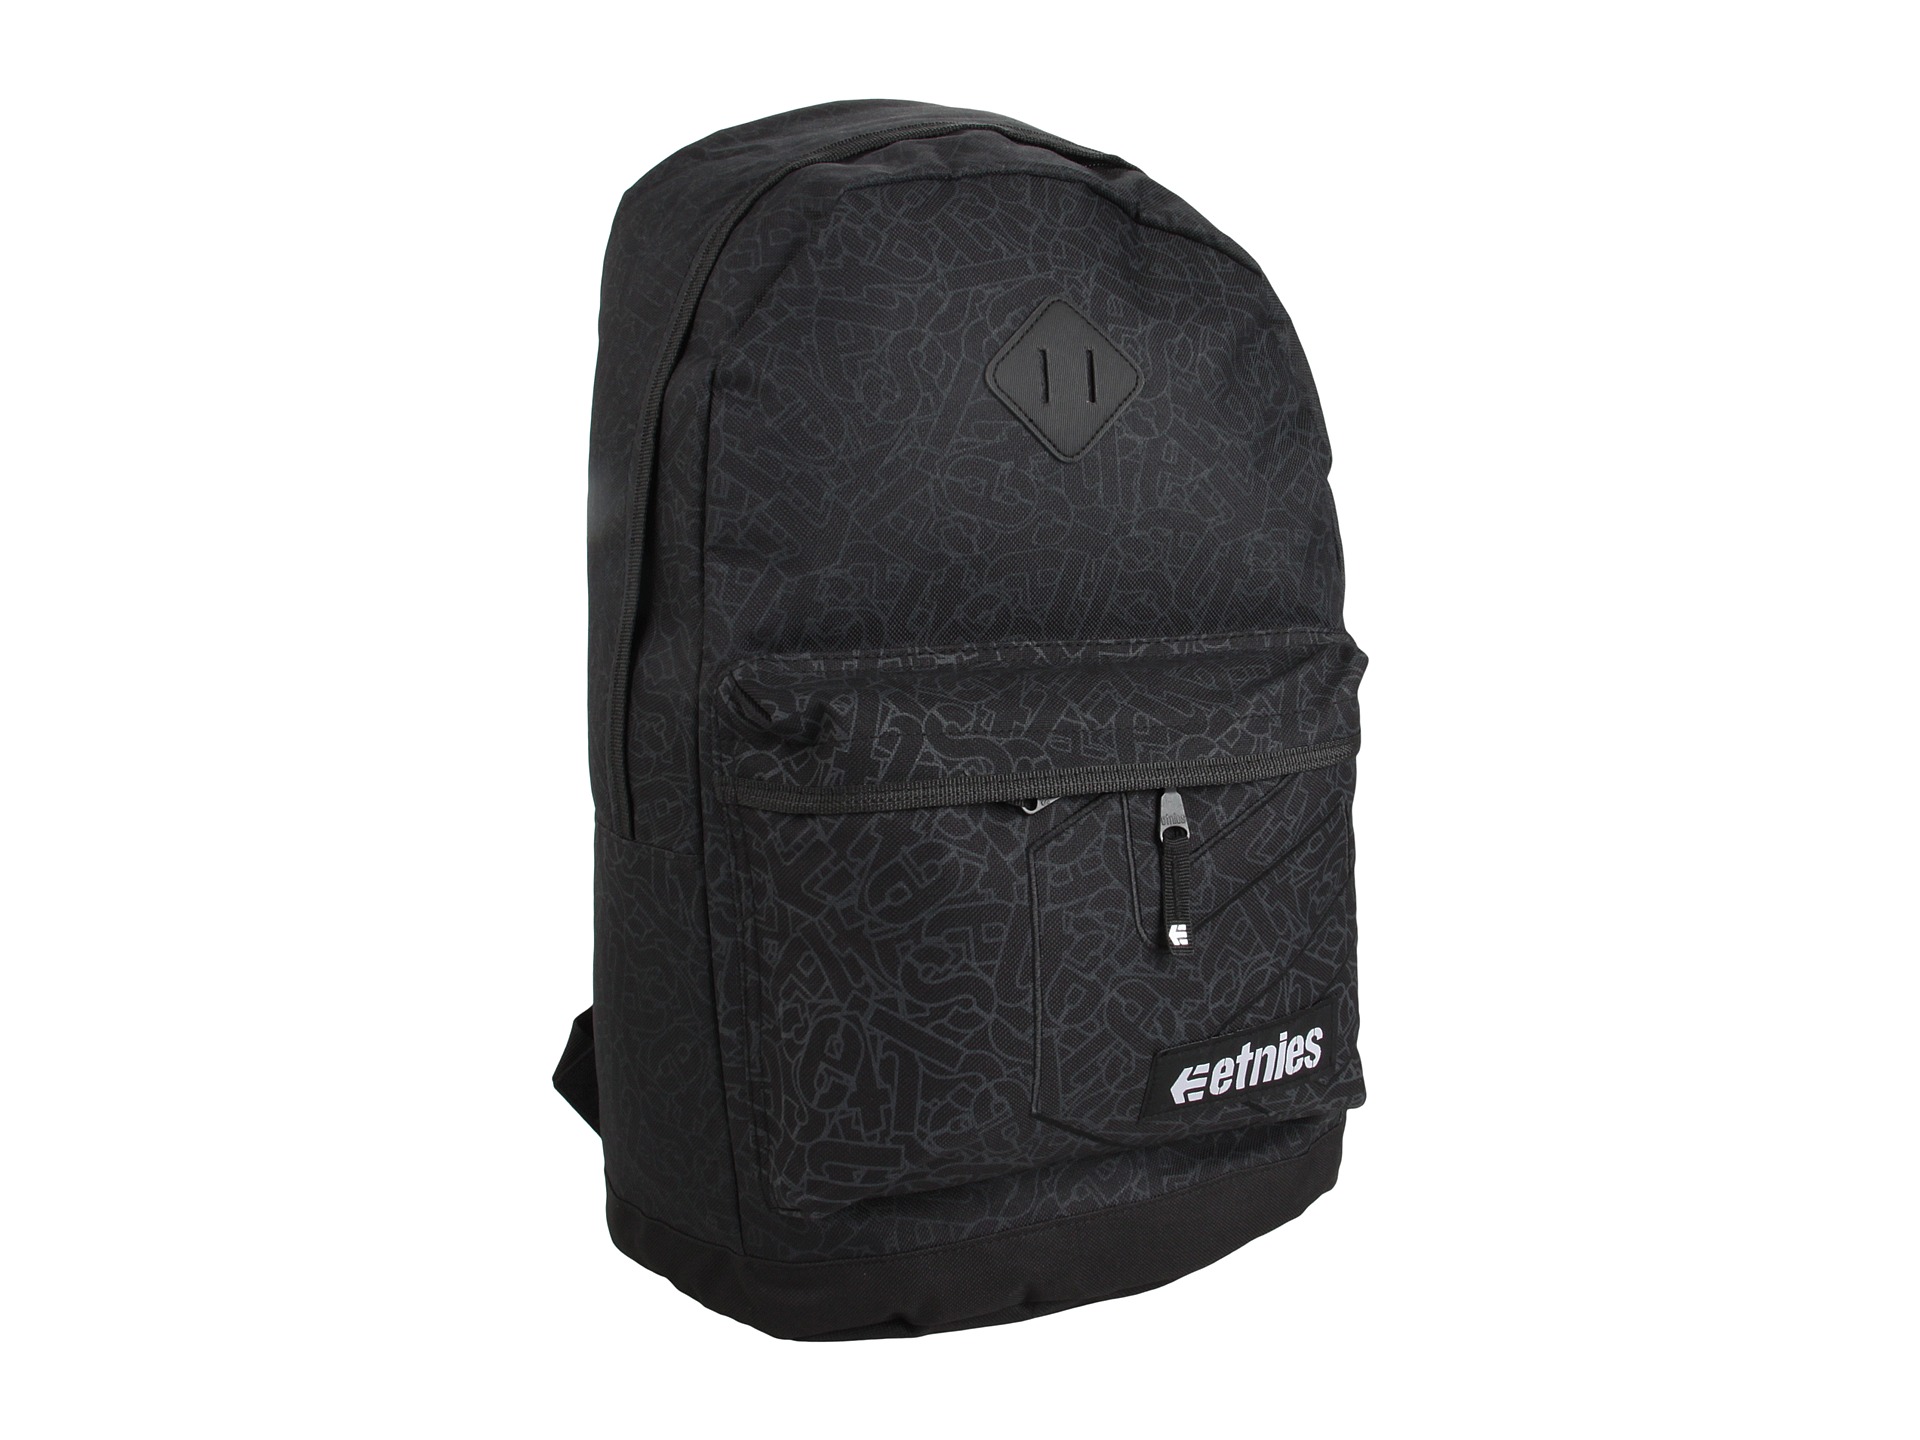 etnies Essential Backpack $22.99 ( 23% off MSRP $30.00)